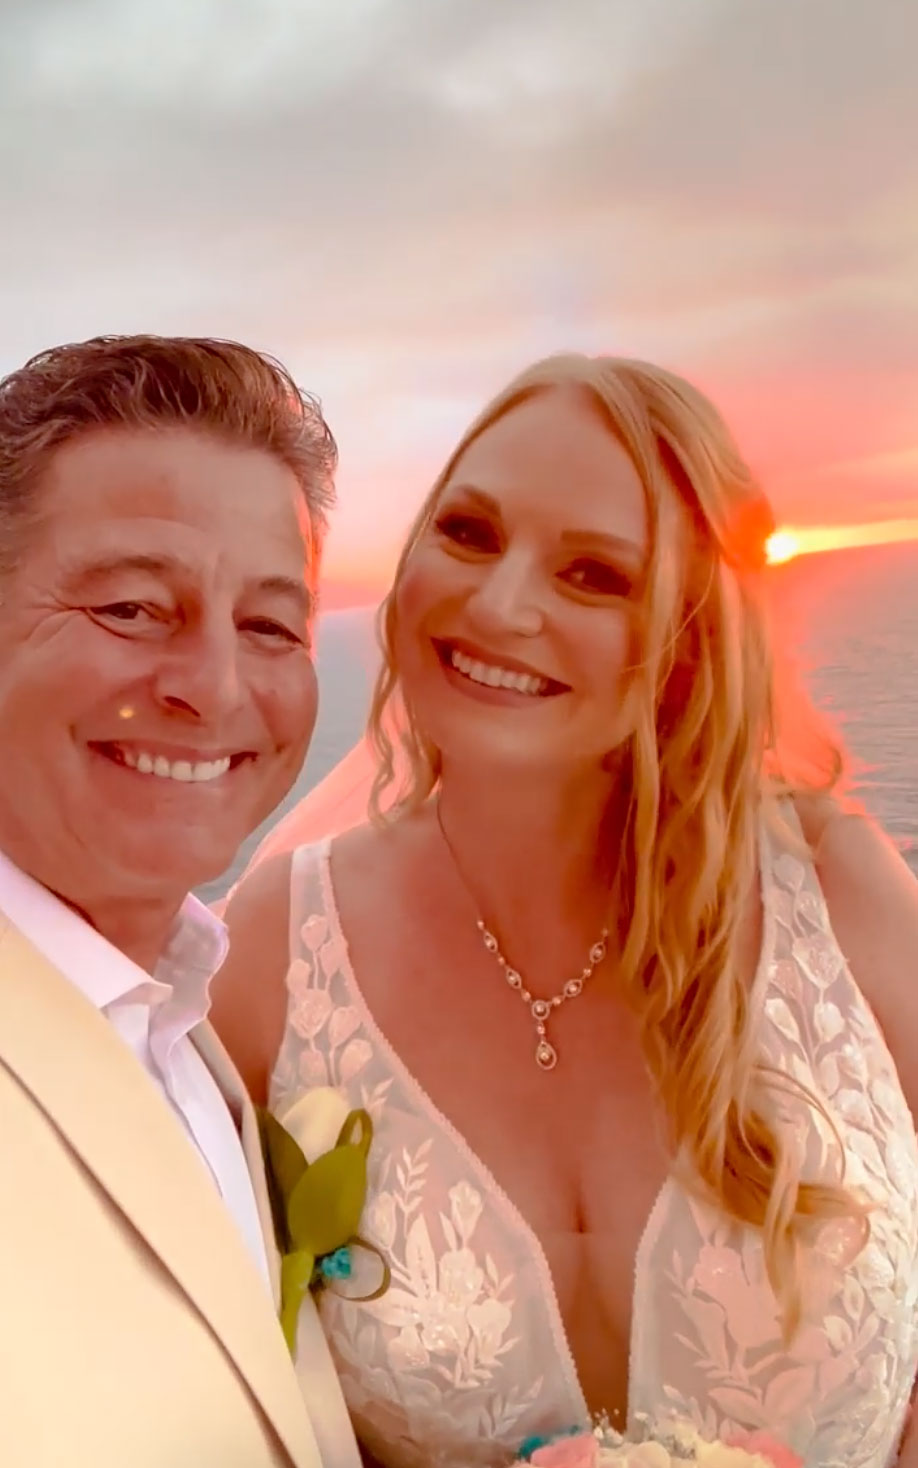 RHOC Vicki Gunvalsons Ex Steve Lodge Marries Janis Carlson in Incredible Wedding His 4th